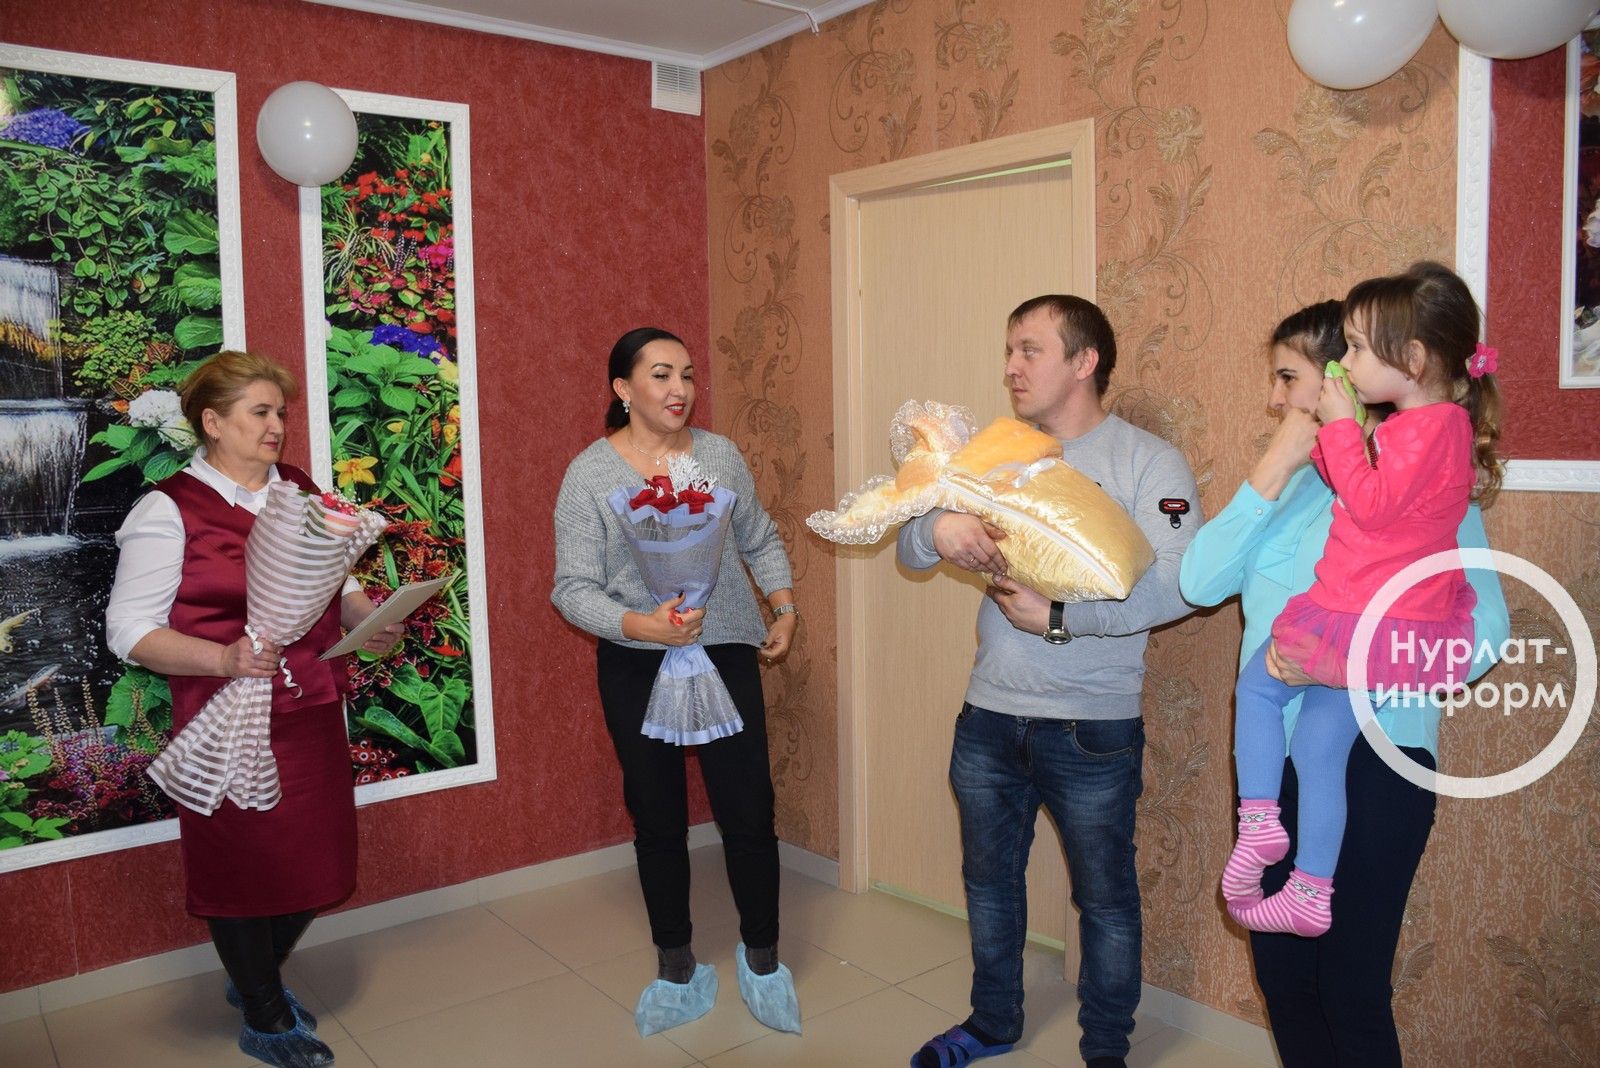 Нурлат: самый первый документ родителям двух новорожденных девочек вручили торжественно прямо в роддоме